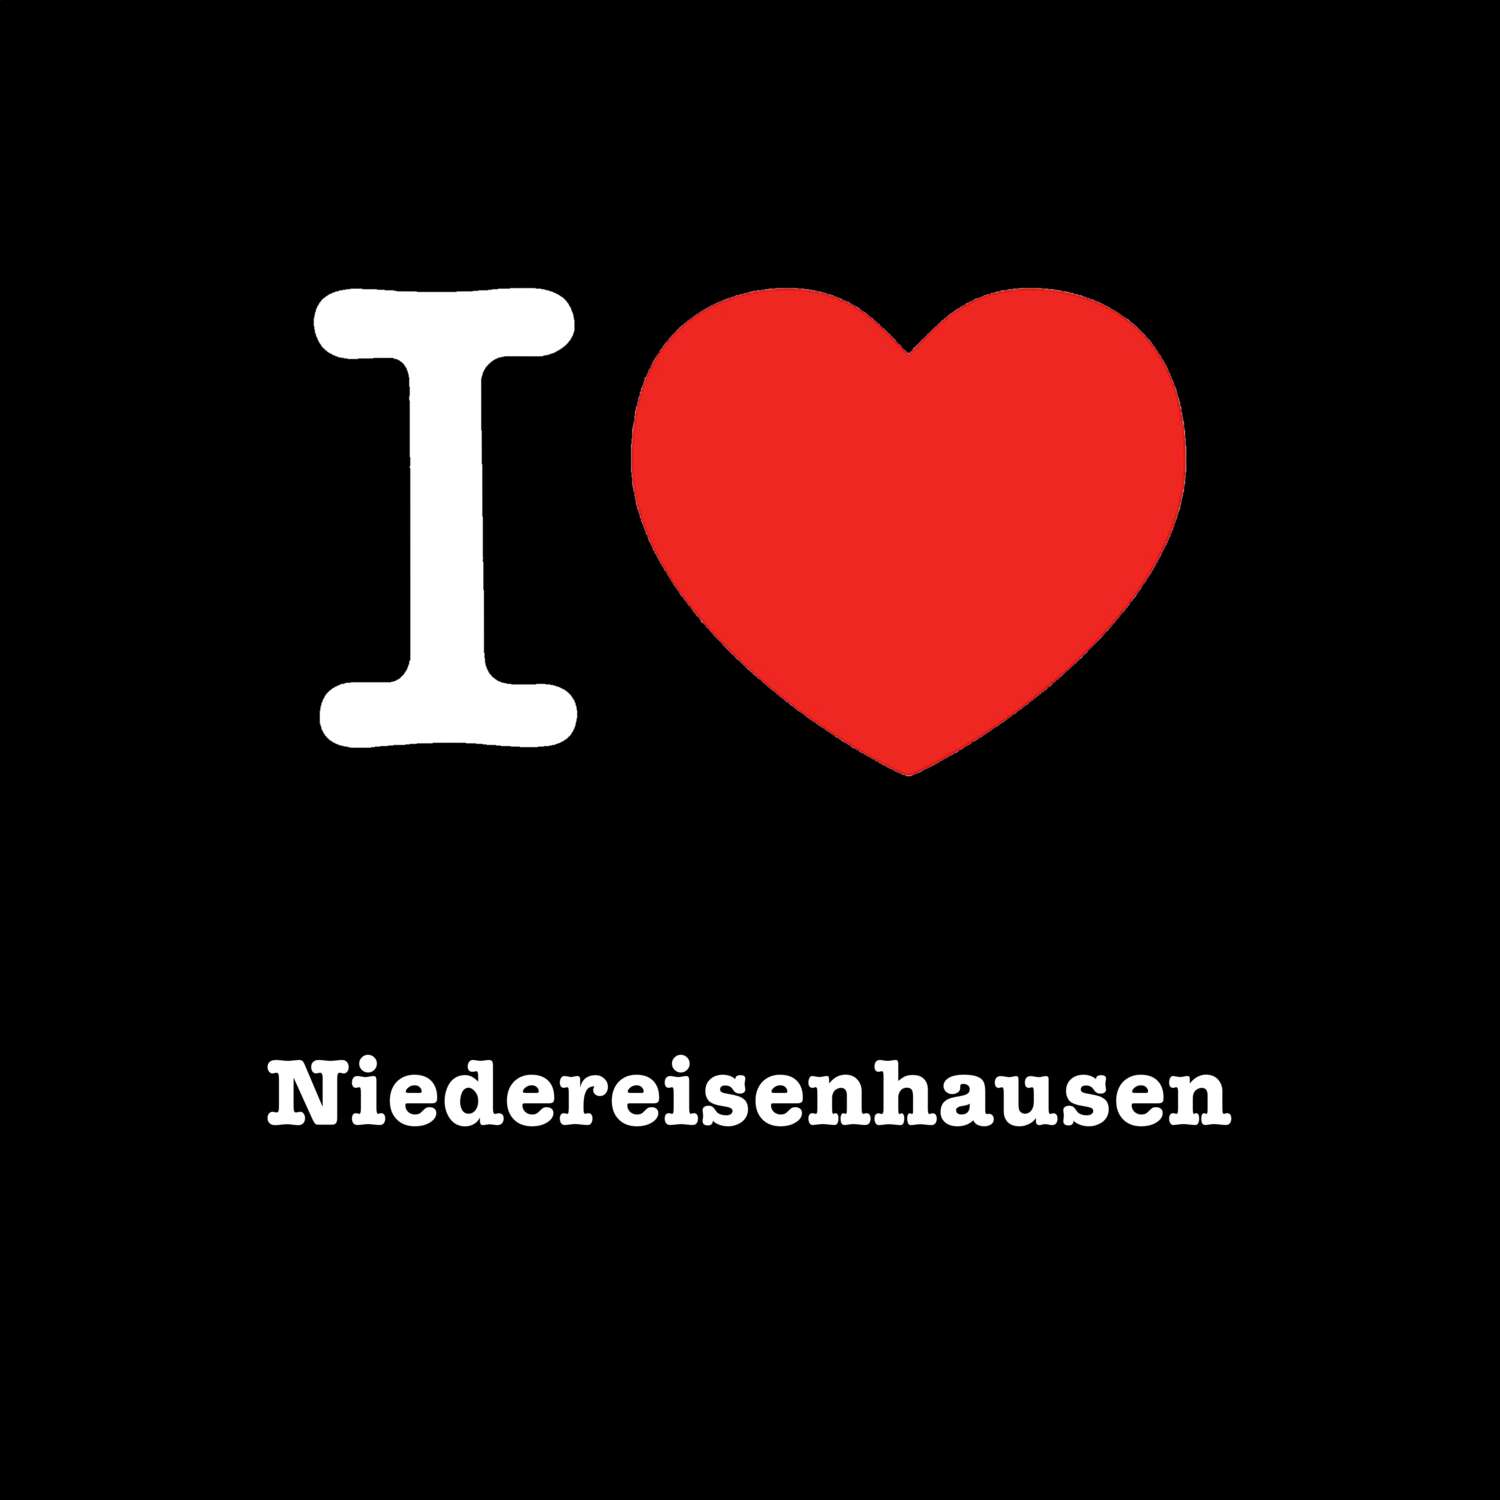 Niedereisenhausen T-Shirt »I love«